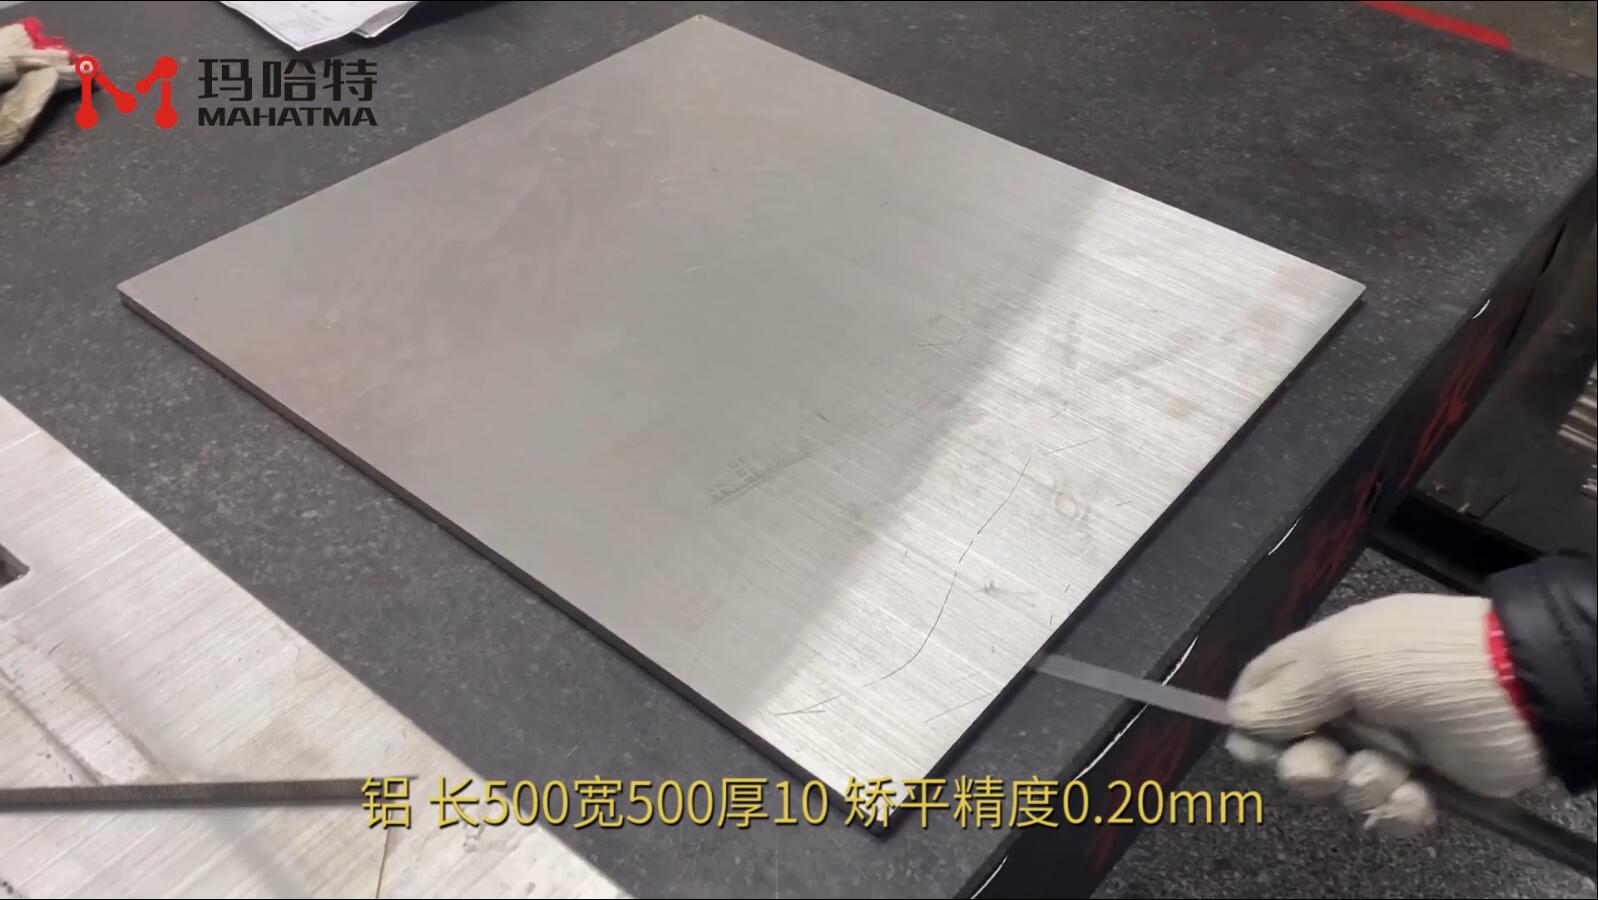 铝 MHT120-1000 正方形 长500宽500厚10 矫平精度0.20mm